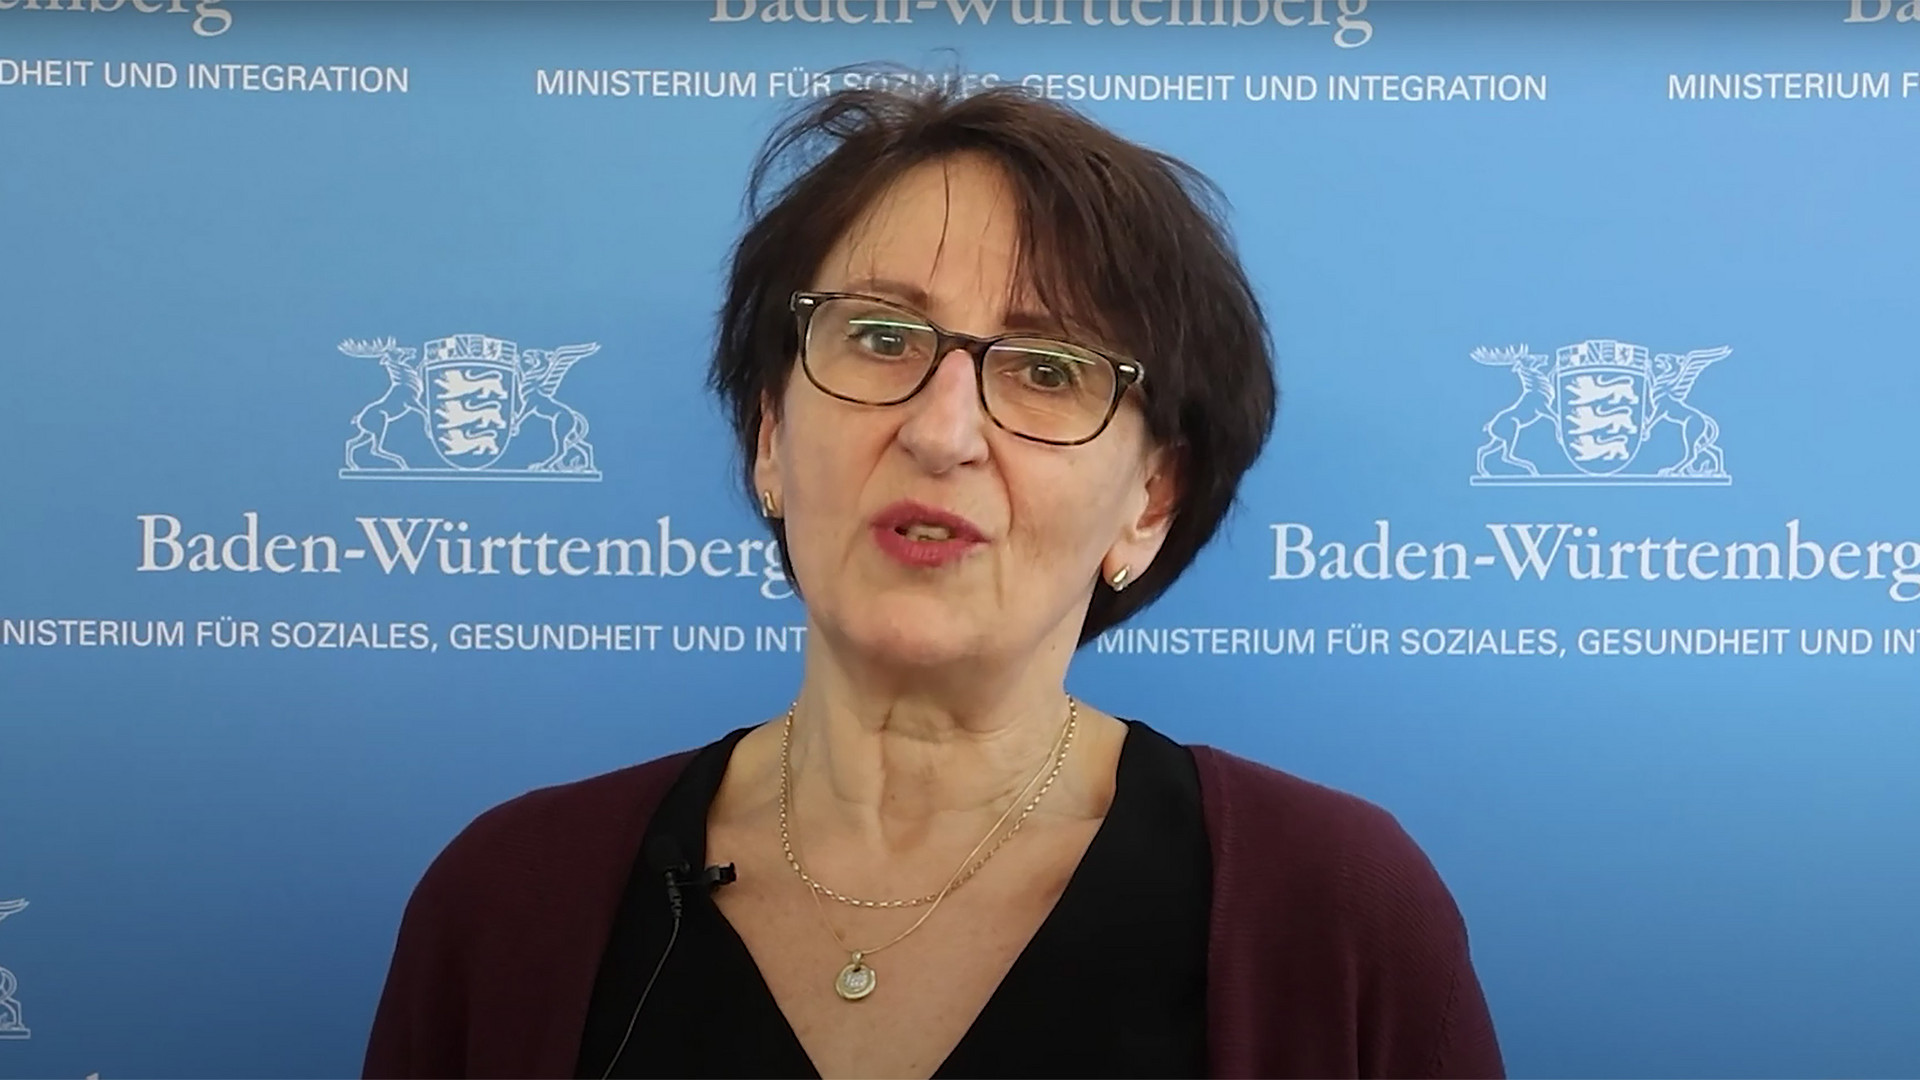 Staatssekretärin Dr. Ute Leidig vor Leinwand mit Logo des Sozialministeriums Baden-Württemberg